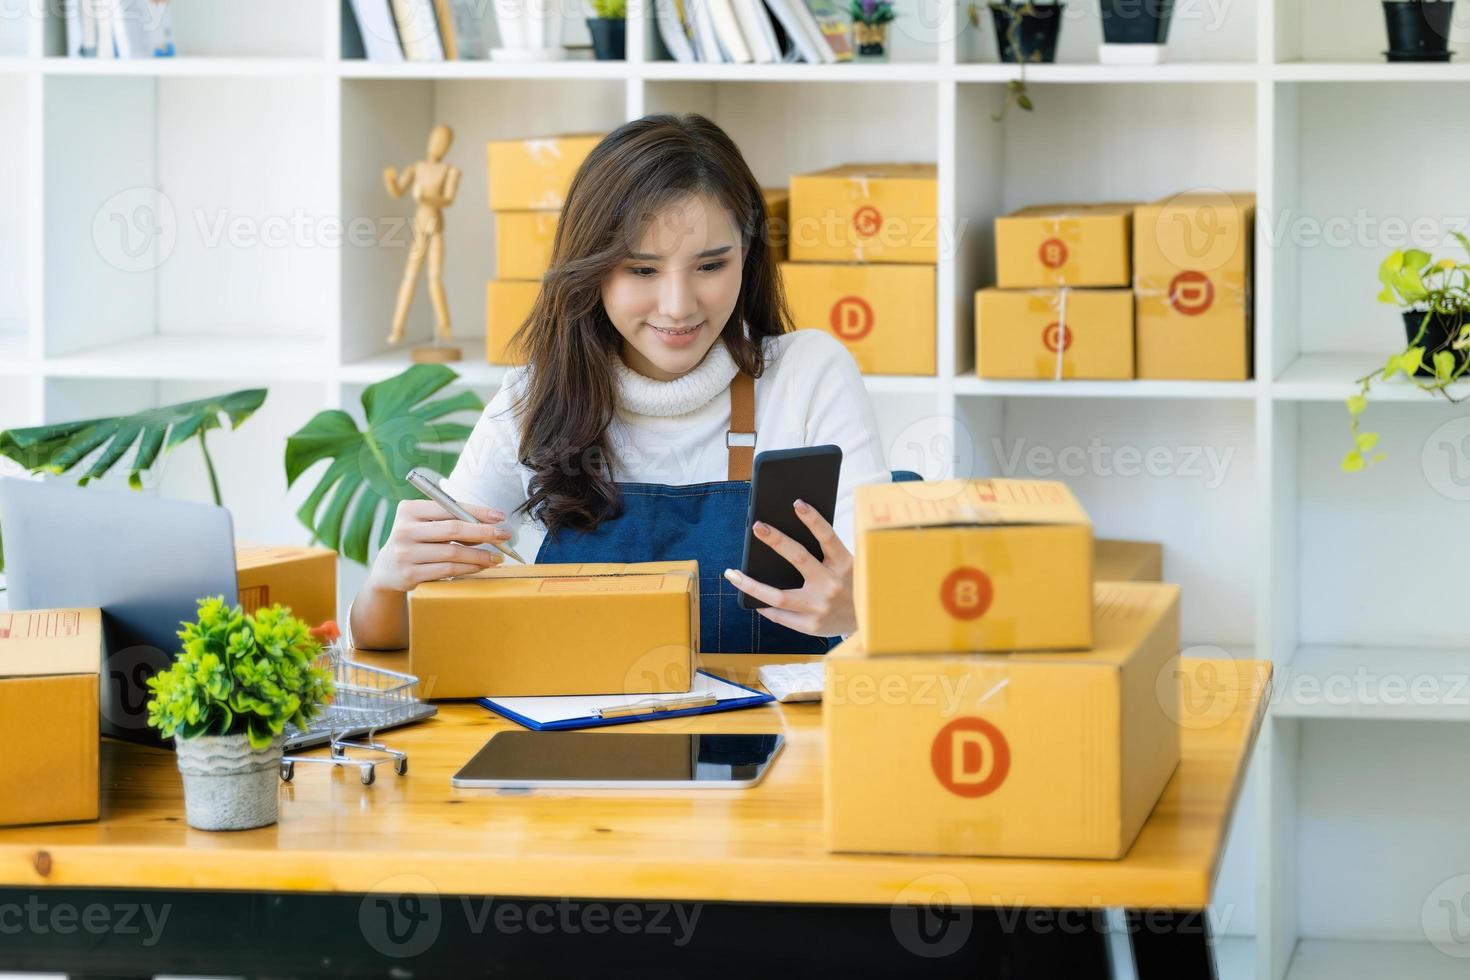 trabajar desde casa. las mujeres felices que venden productos en línea comienzan una pequeña empresa usando un teléfono inteligente y una computadora portátil para calcular los precios y prepararse para el franqueo. foto